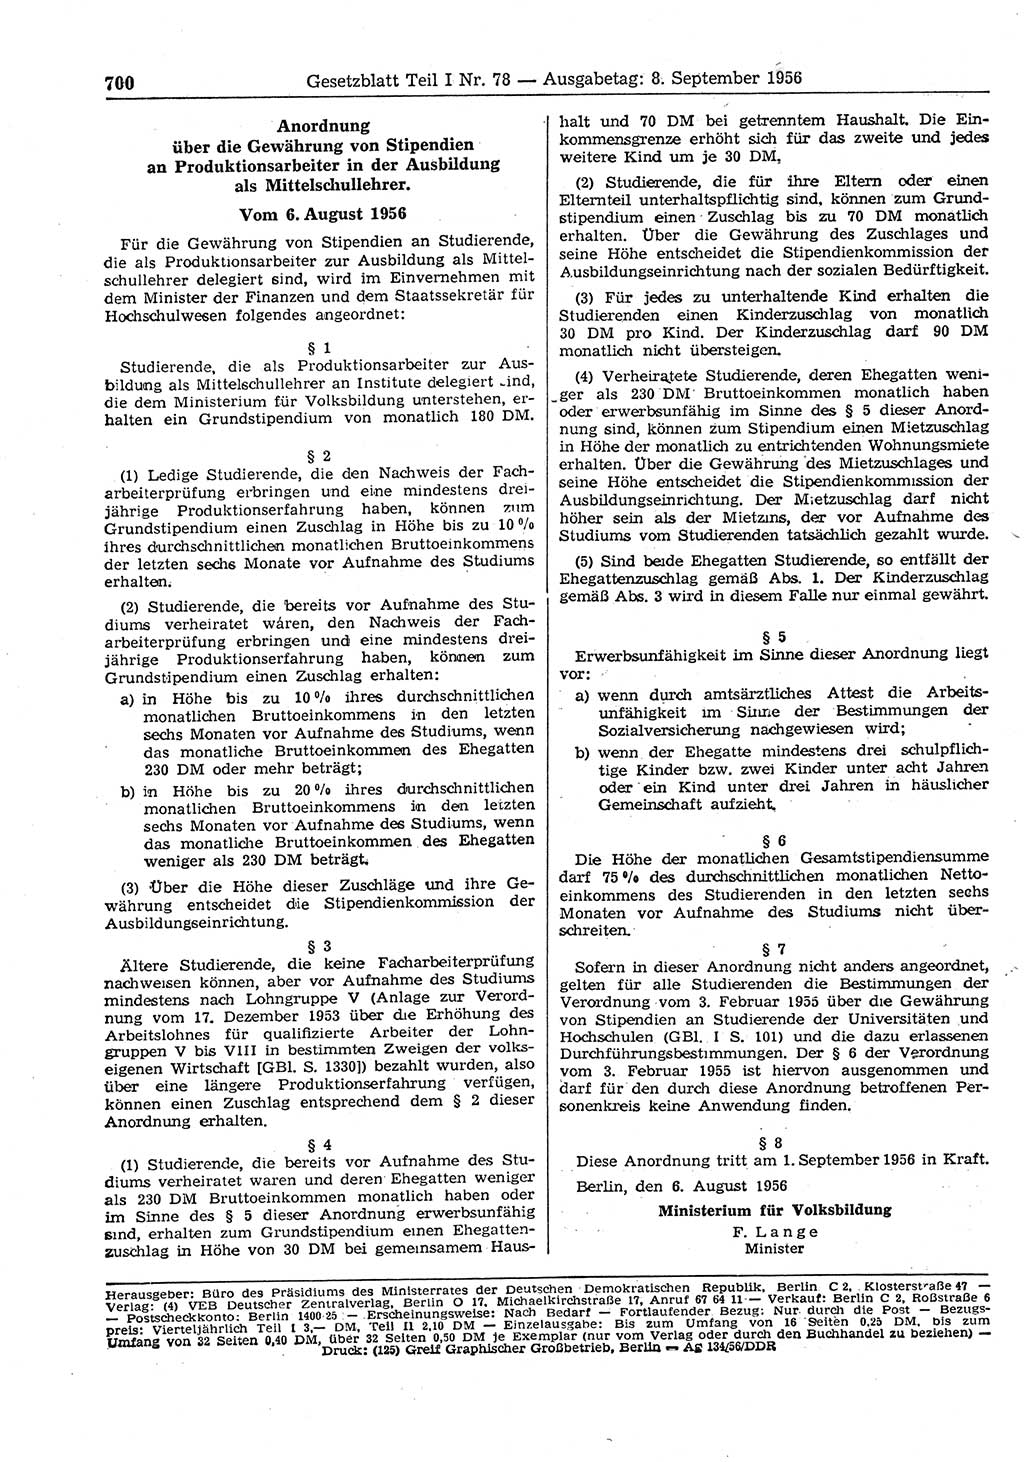 Gesetzblatt (GBl.) der Deutschen Demokratischen Republik (DDR) Teil Ⅰ 1956, Seite 700 (GBl. DDR Ⅰ 1956, S. 700)